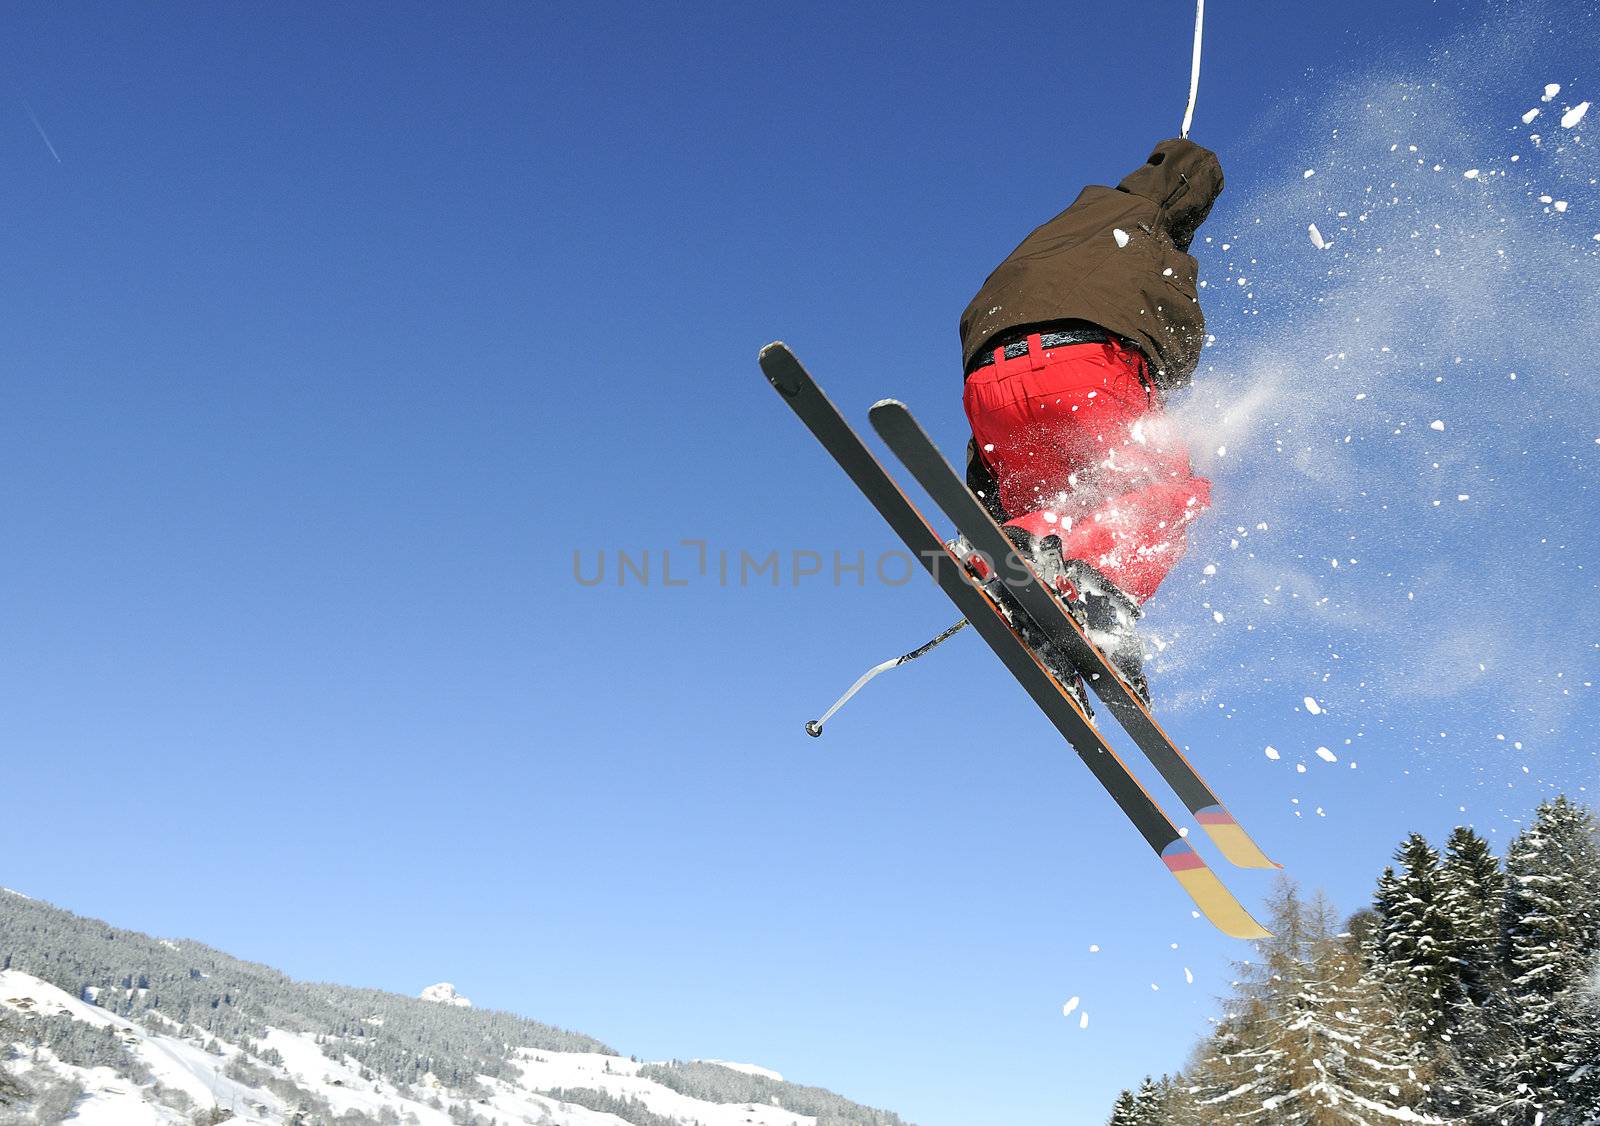 Jumping skier by ventdusud